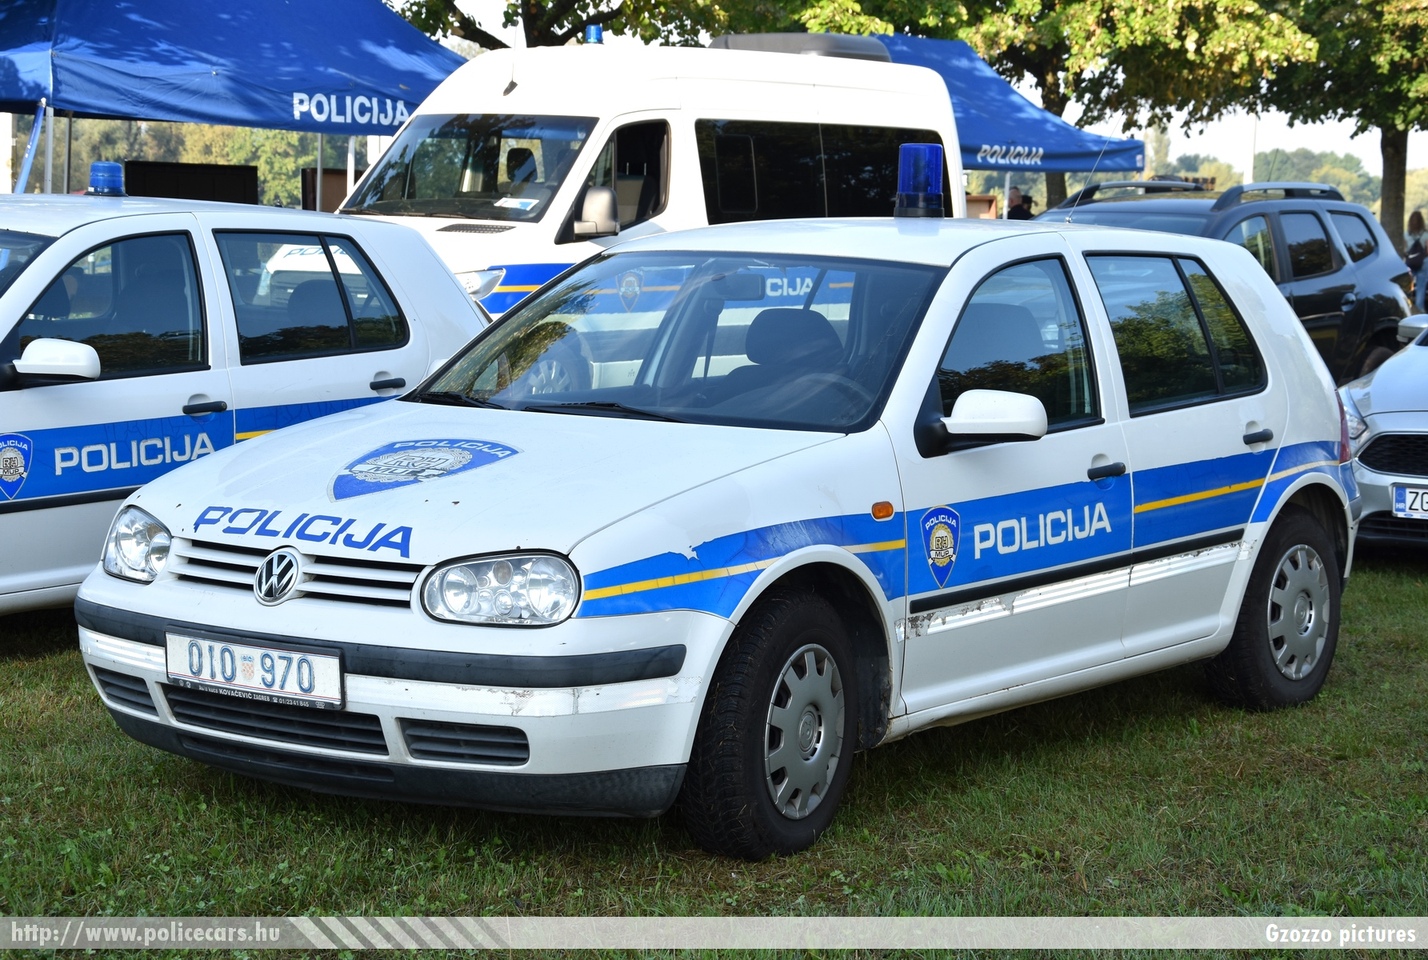 Volkswagen Golf IV, Hrvatska policija, fotó: Gzozzo pictures
Keywords: croatian rendőr rendőrautó rendőrség horvát Horvátország policecar police Croatia